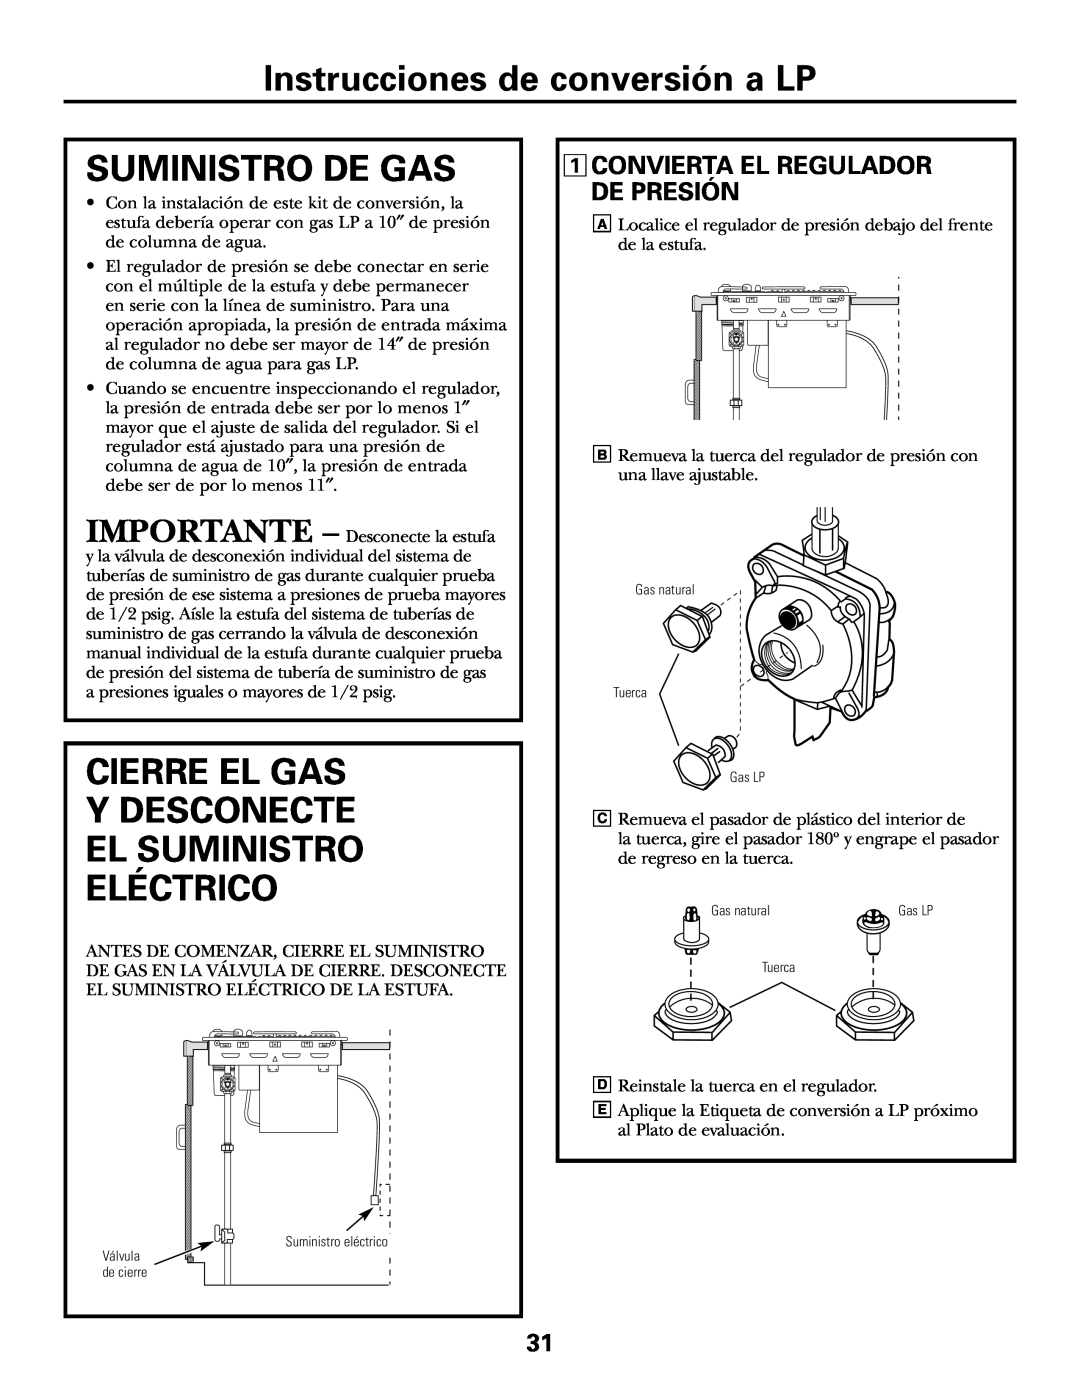 GE JGP985 Instrucciones de conversión a LP, Suministro De Gas, Cierre El Gas, Ydesconecte El Suministro Eléctrico 